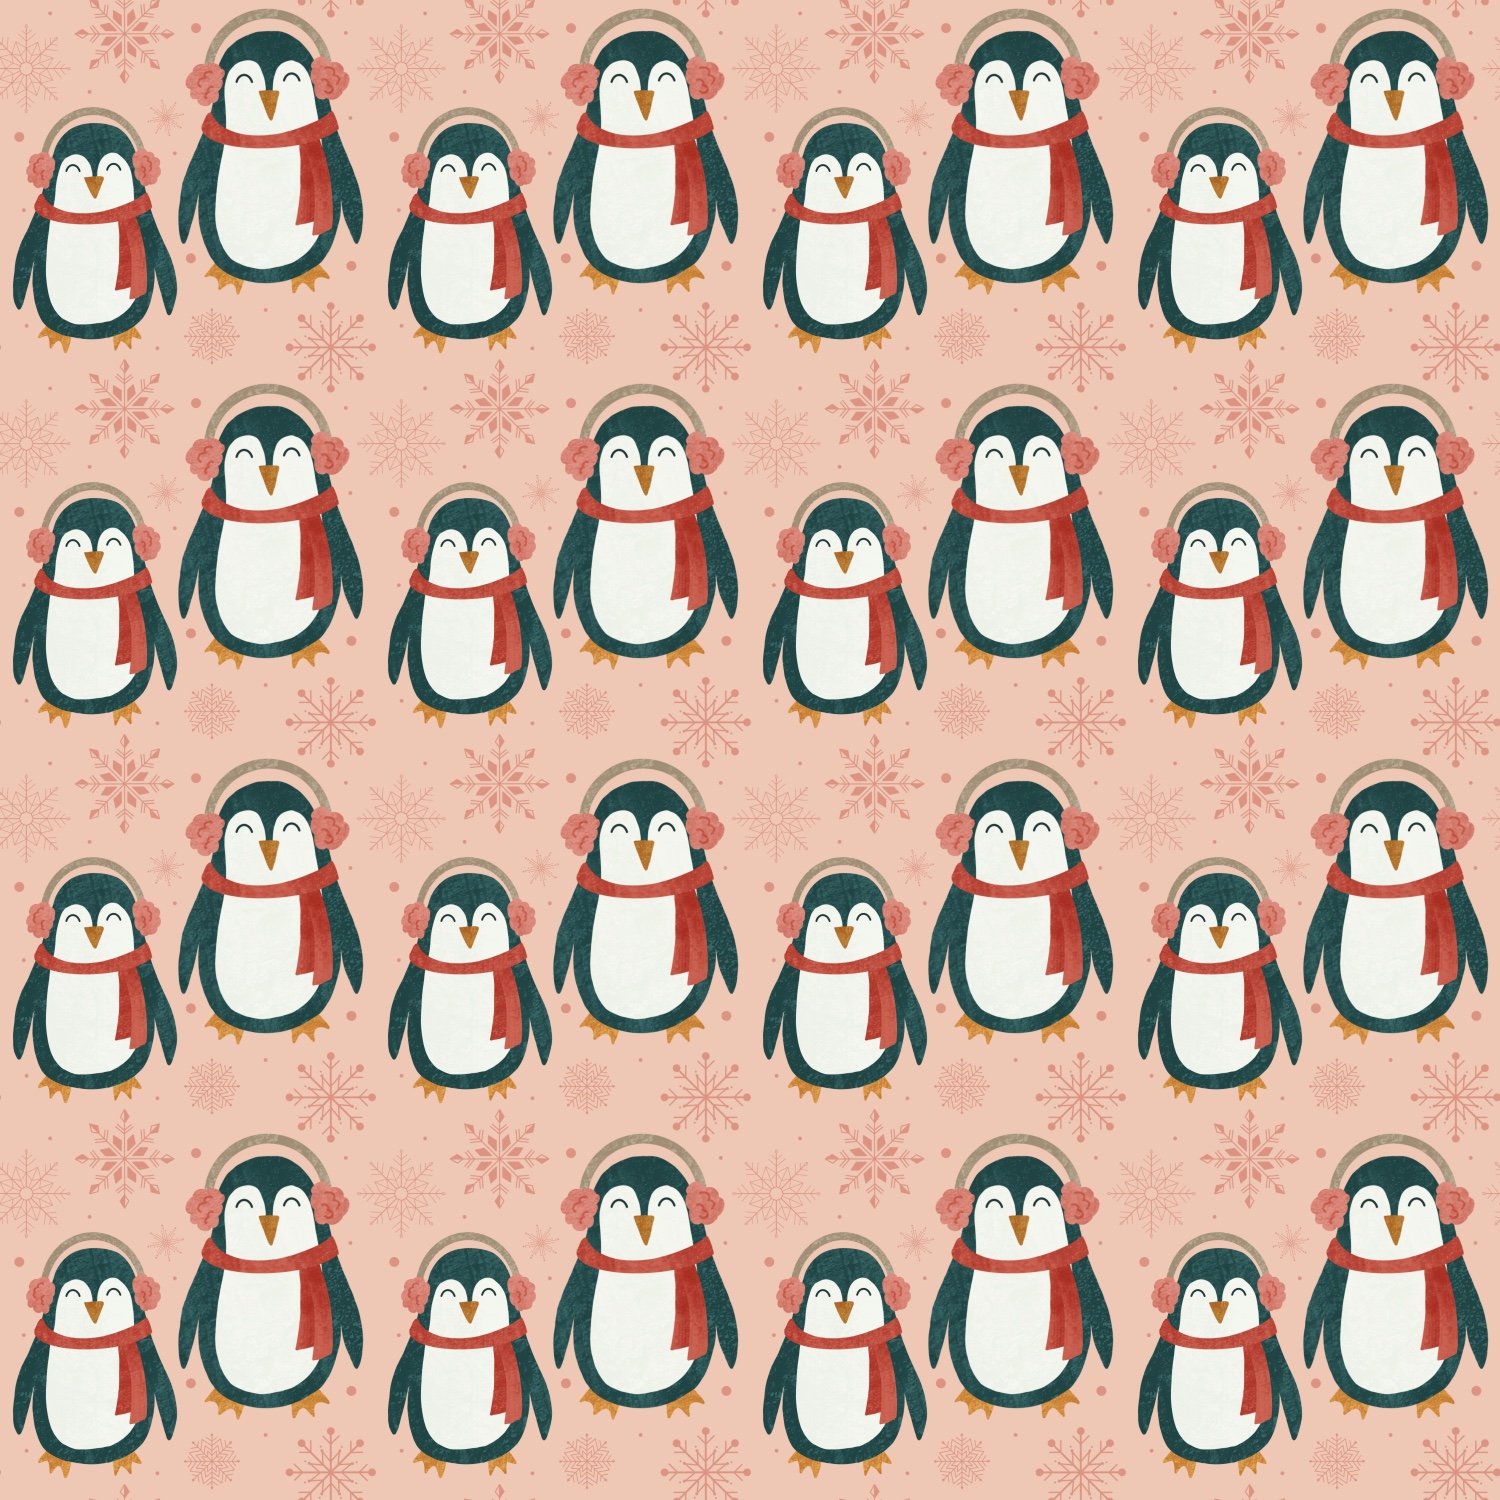 Penguins_Pattern.jpg